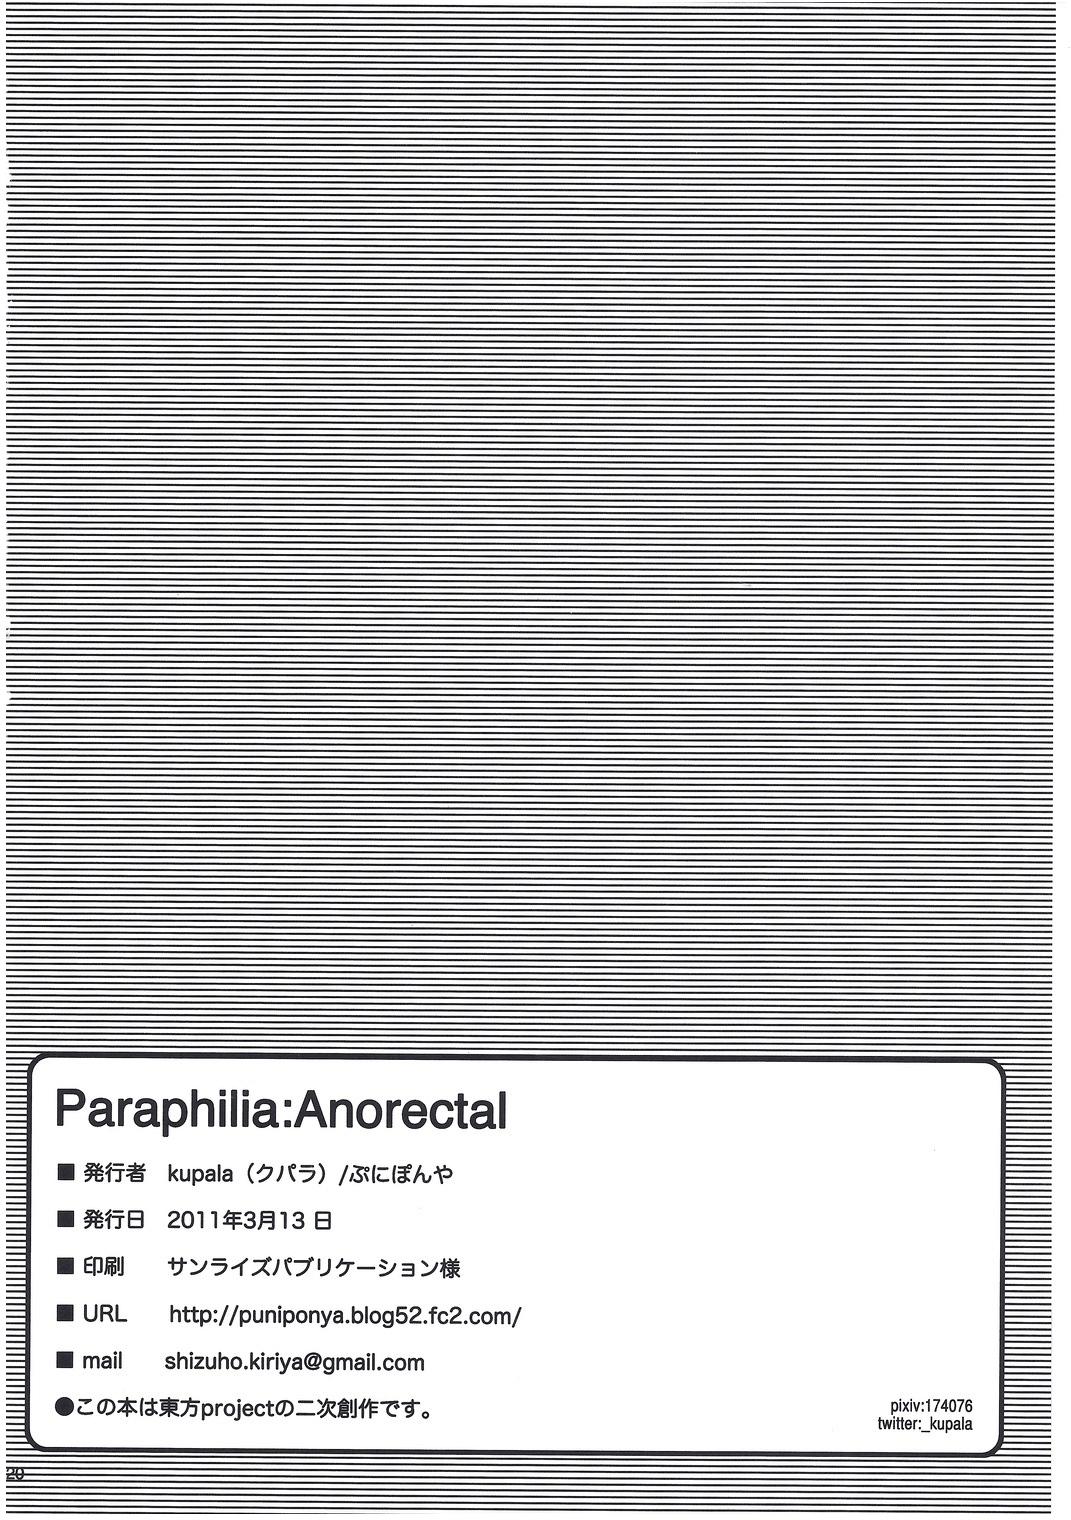 Paraphilia: Anorectal 20